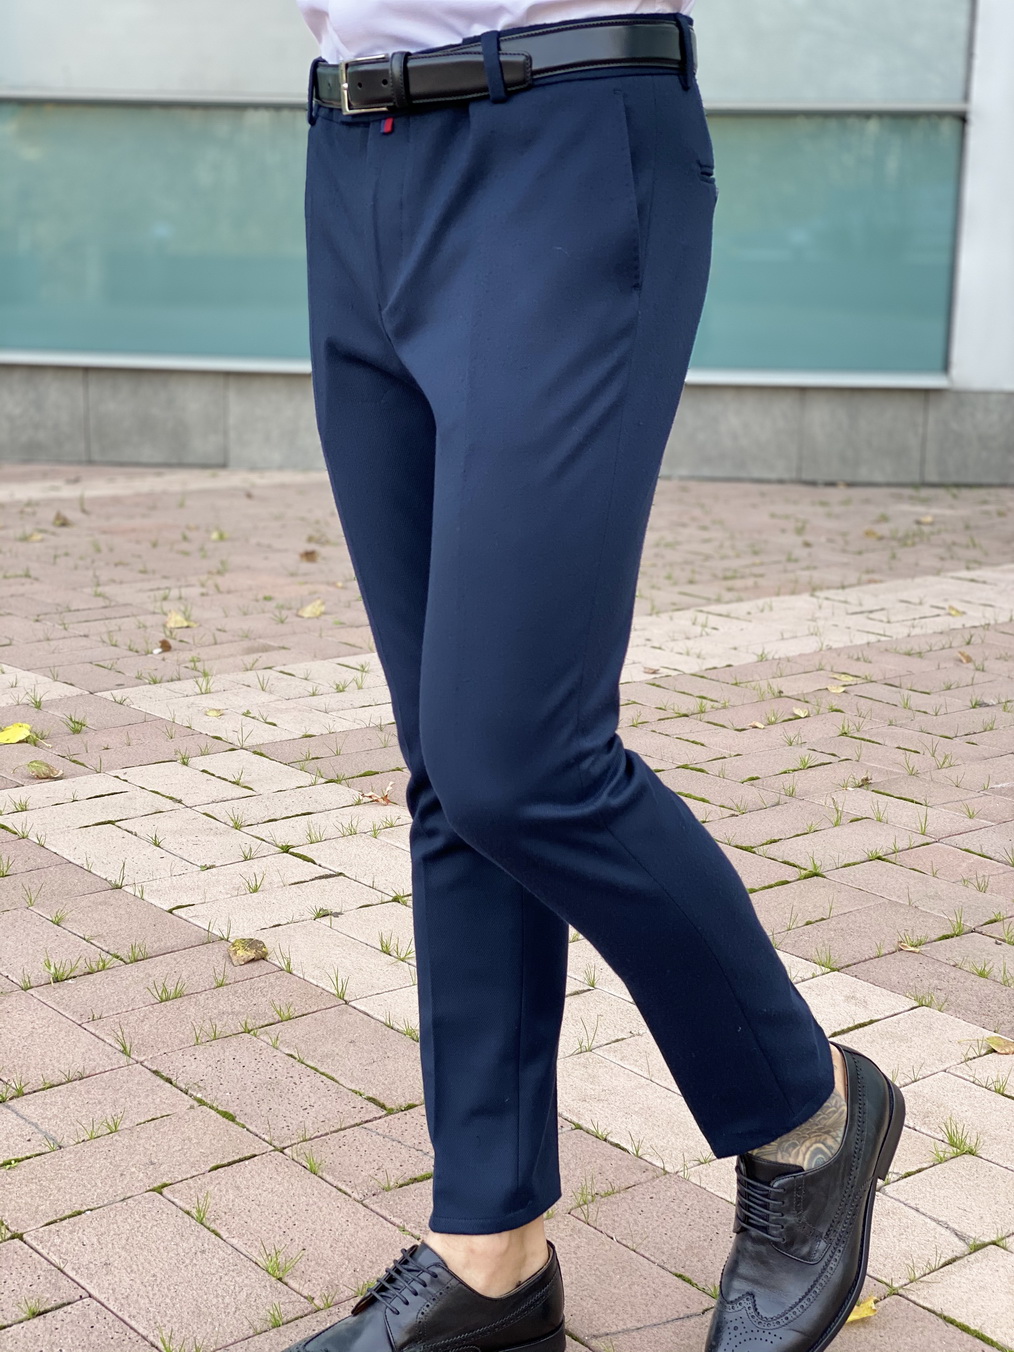 Приталенные синие мужские брюки Арт.:2562 – купить в магазине мужскойодежды Smartcasuals